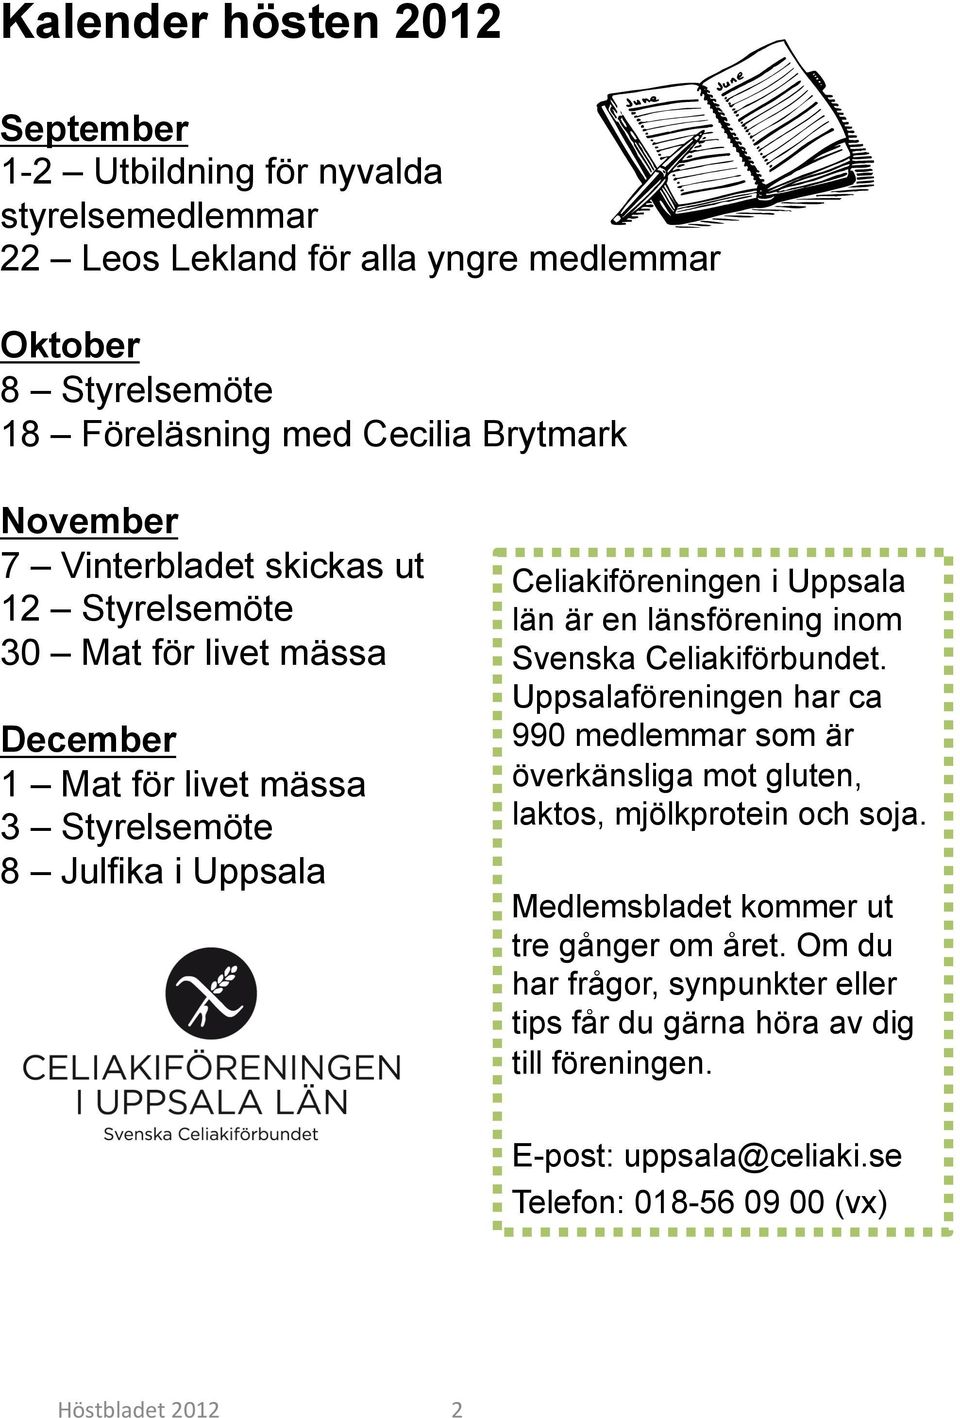 Uppsala län är en länsförening inom Svenska Celiakiförbundet. Uppsalaföreningen har ca 990 medlemmar som är överkänsliga mot gluten, laktos, mjölkprotein och soja.